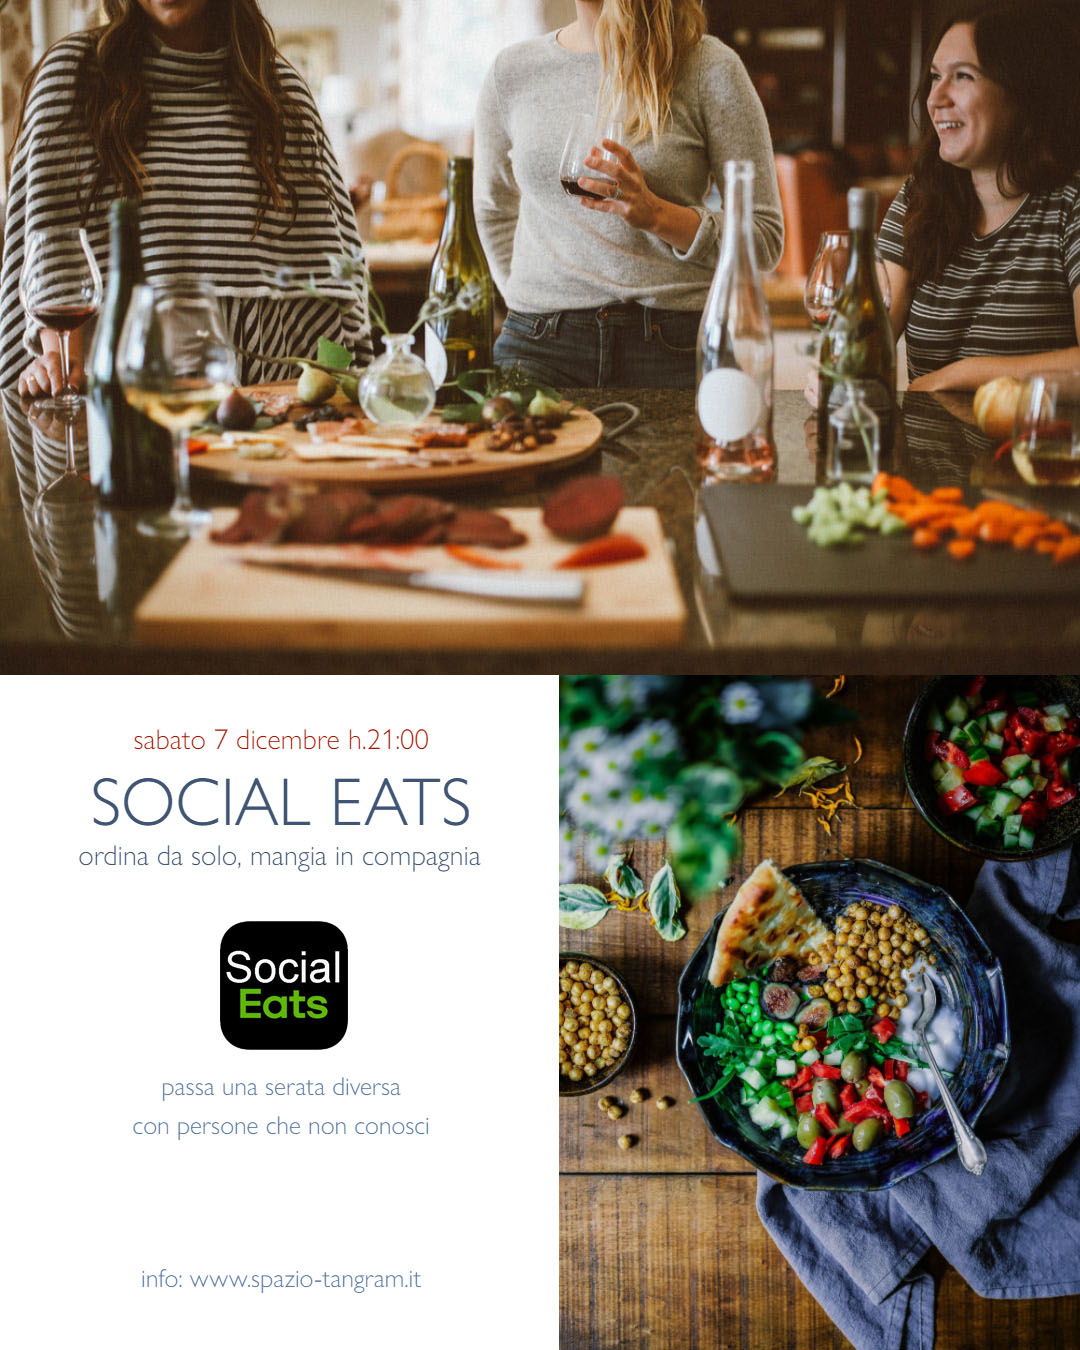 Social Eats: ordina da solo, mangia in compagnia